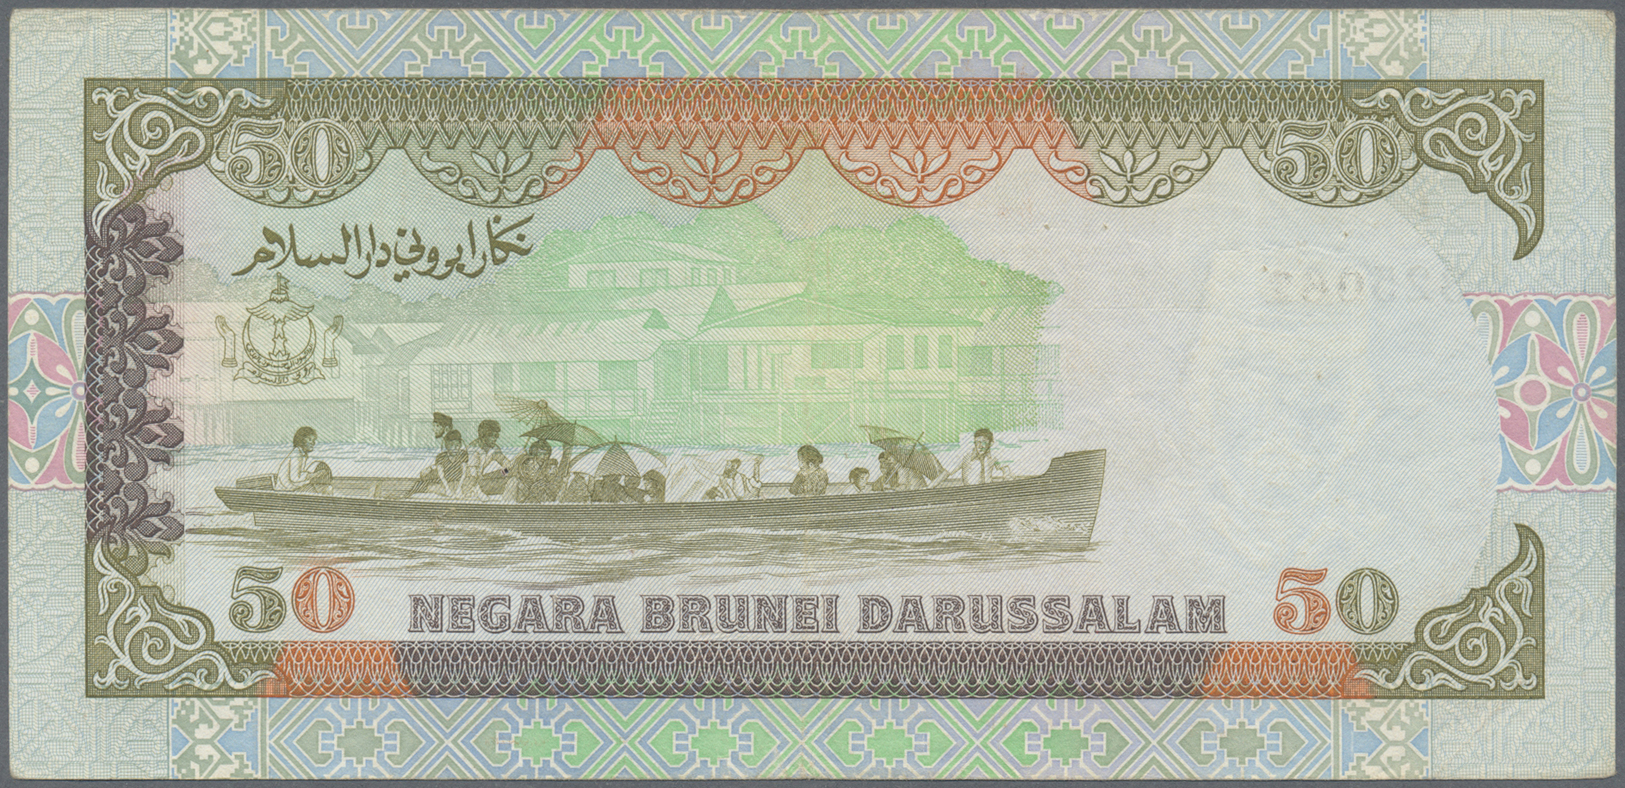 00361 Brunei: 50 Ringgit P. 16 Used But With Error Print, Missing Signature Titles And Signatures At Center, Rare Error, - Brunei